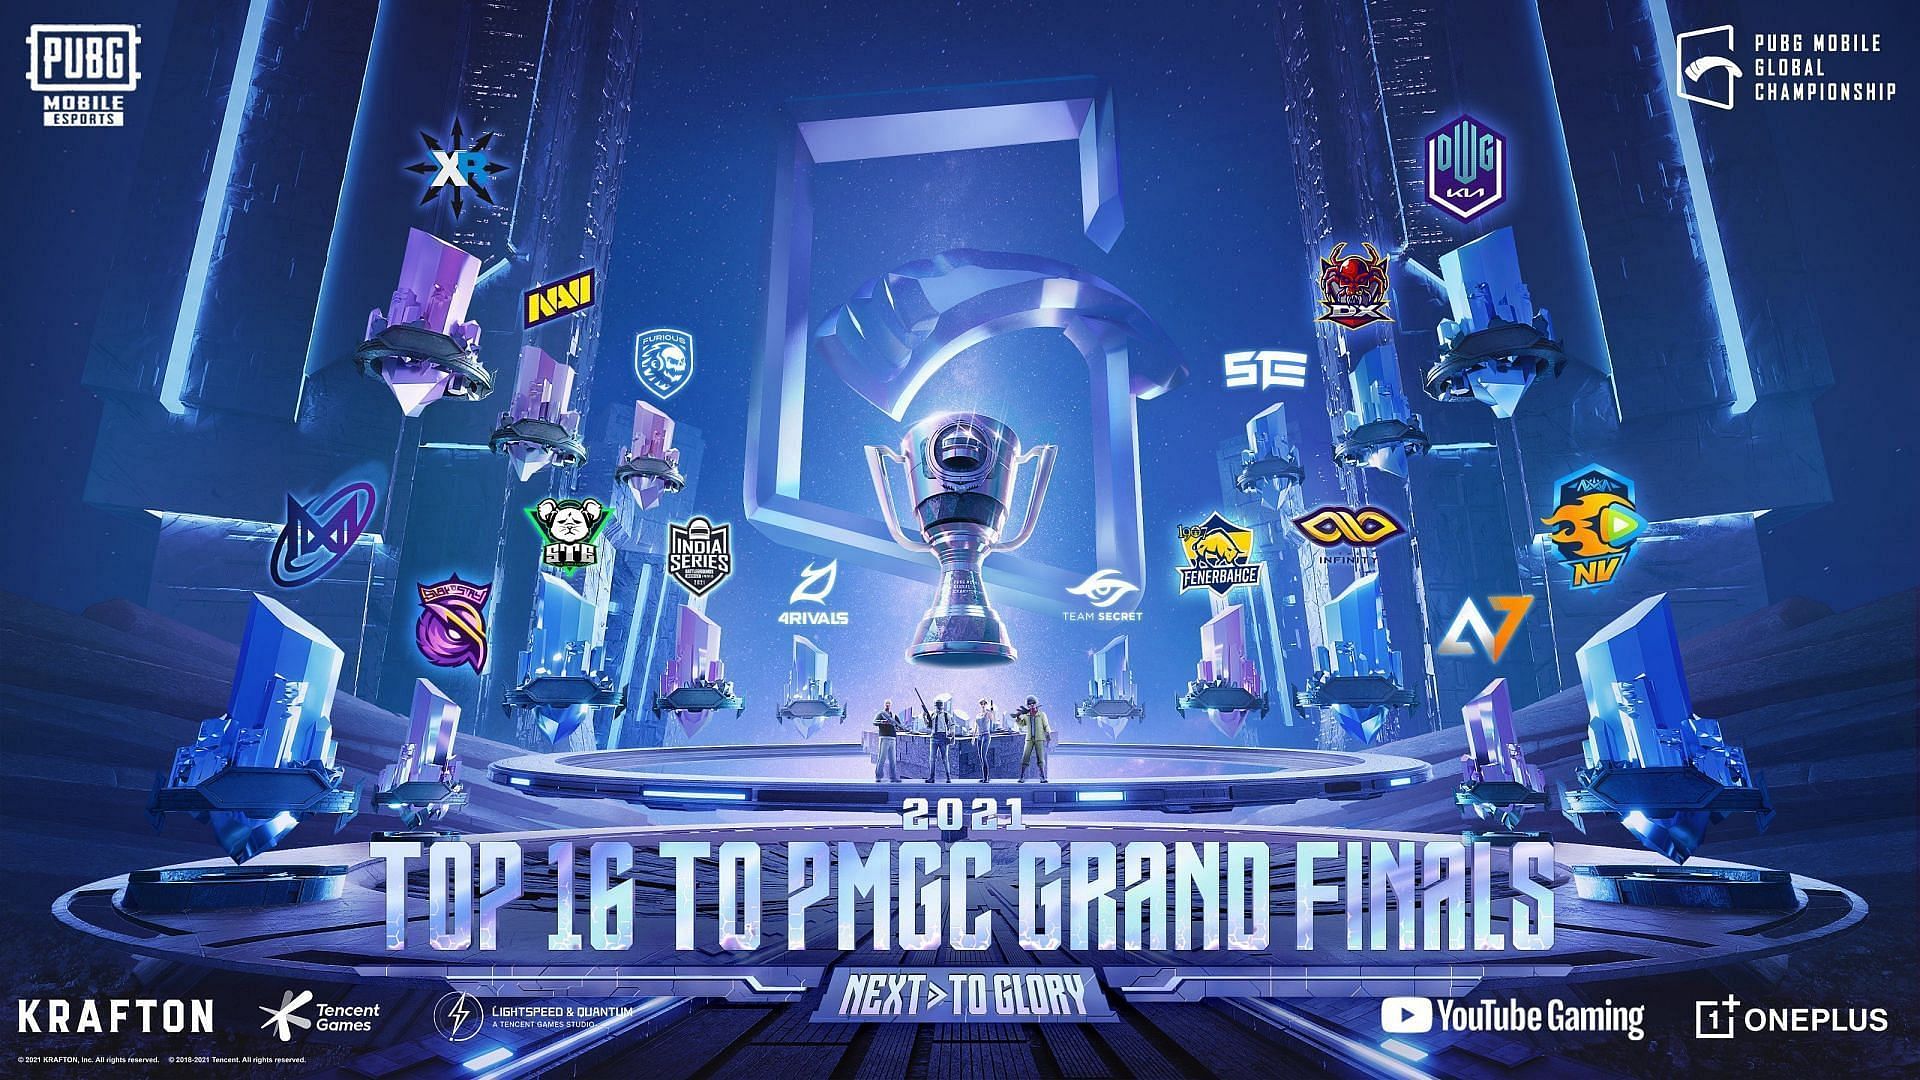 Details about PMGC 2021 Grand Finals (Image via PUBG Mobile)